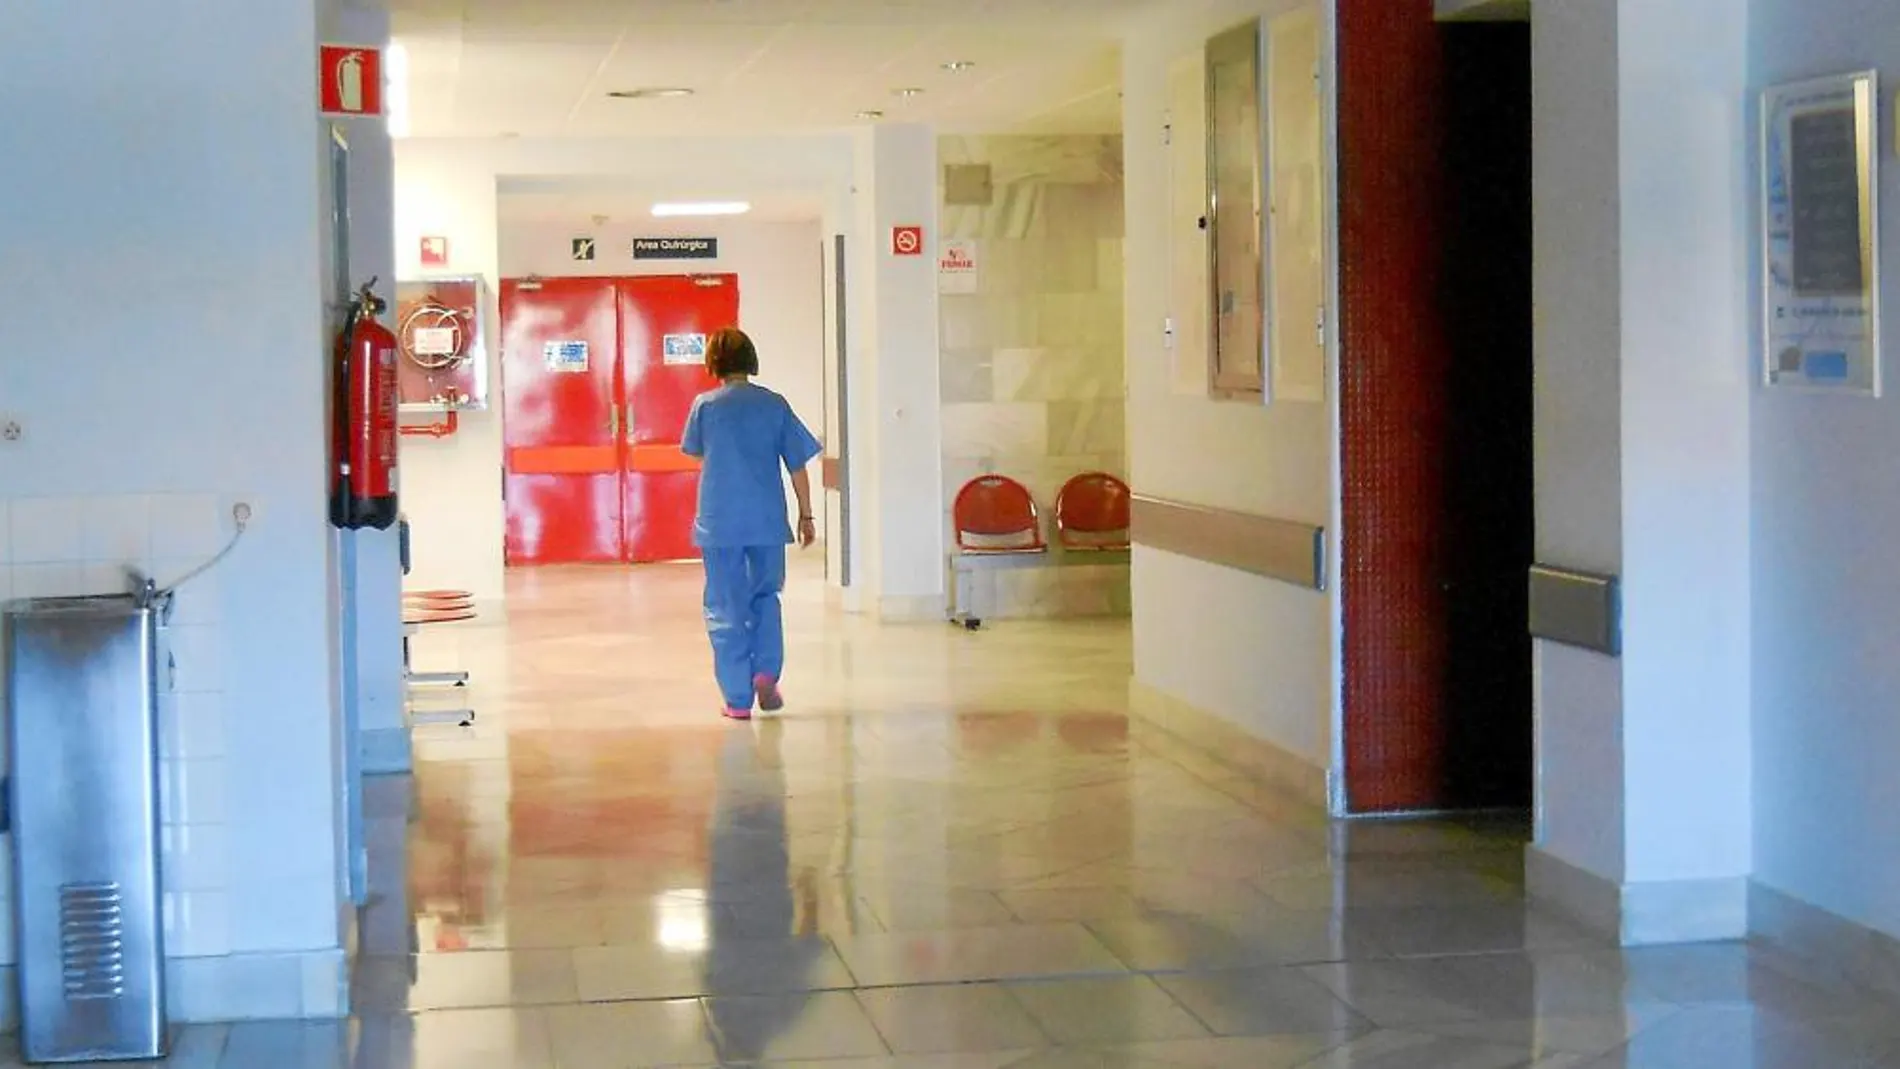 Las limpiadoras trabajan estos días, pese al Covid-19, para que los hospitales andaluces estén en perfecto estado y puedan funcionar a pleno rendimiento